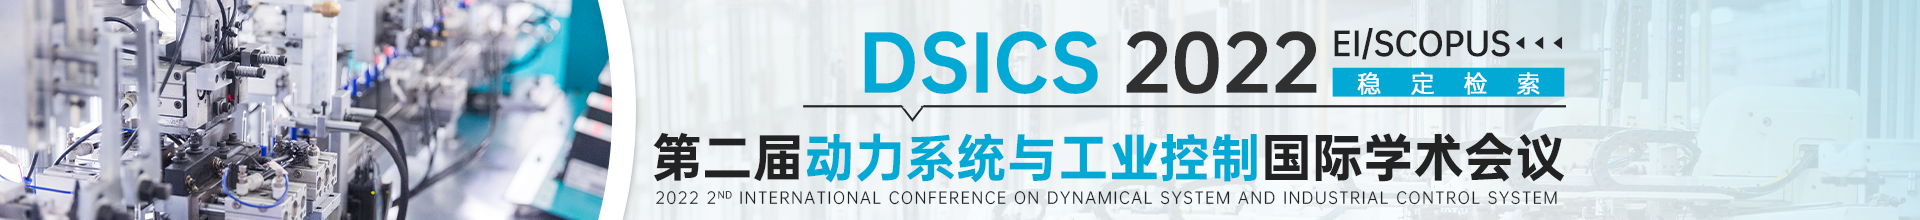 1月-天津DSICS2022-会议云banner-何雪仪-20210810.png